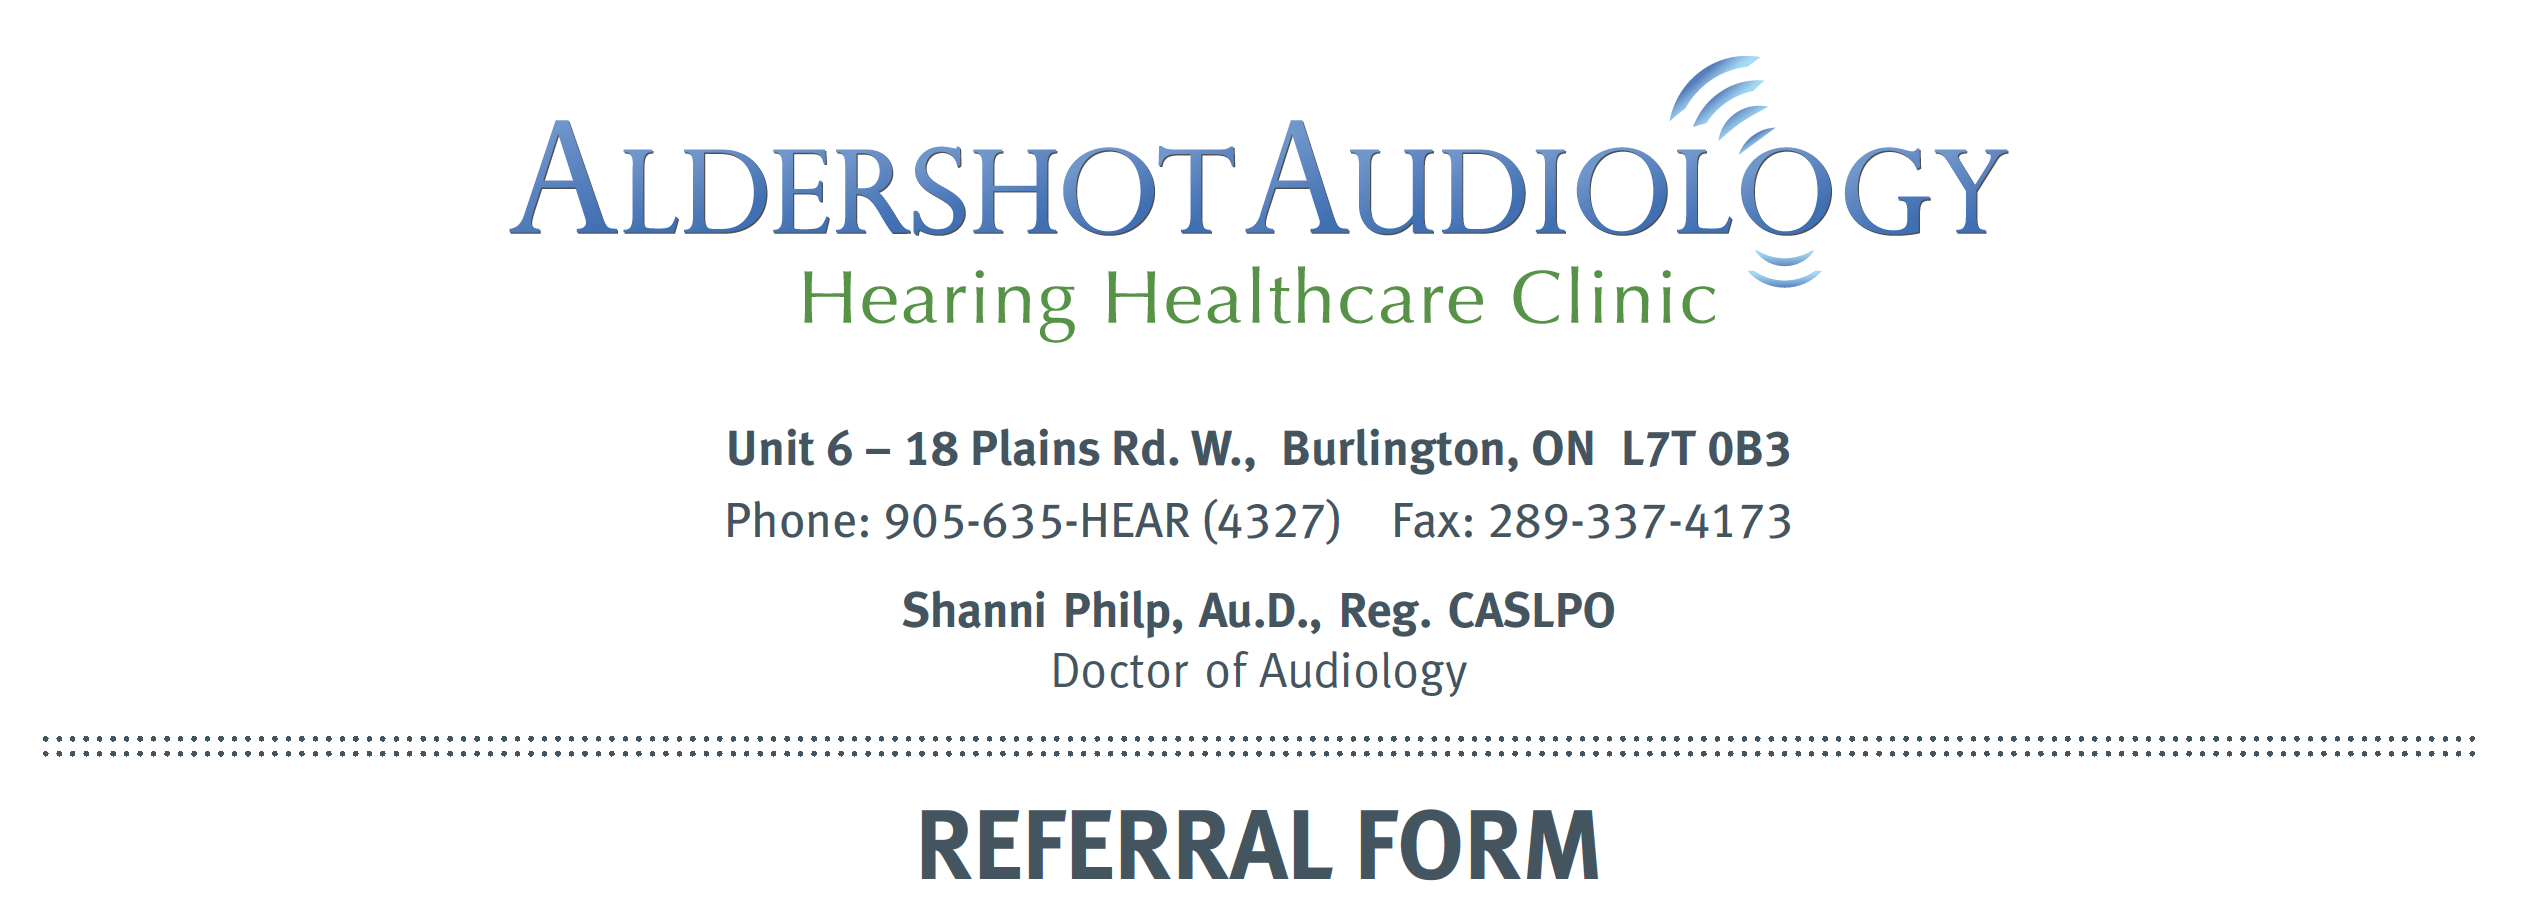 referral-form-aldershot-audiology